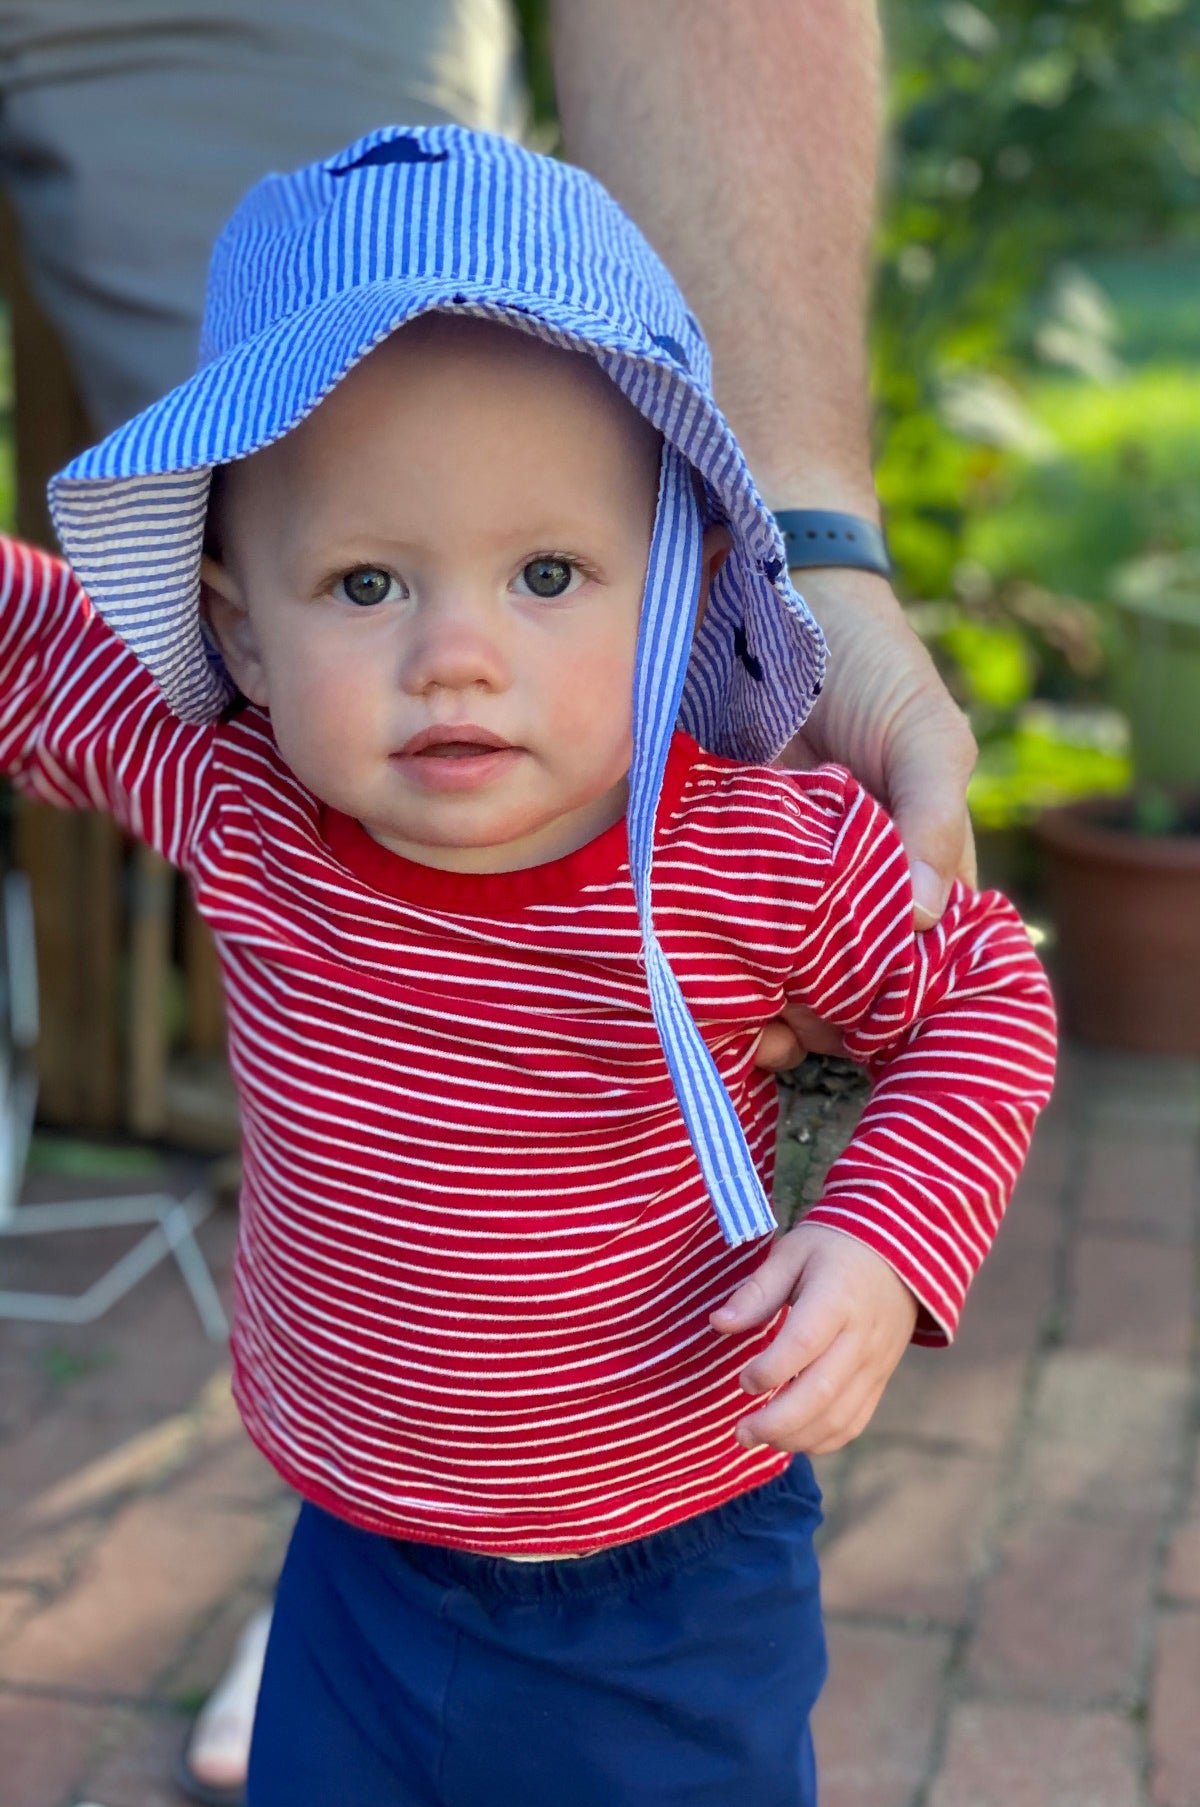 Blue Seersucker with Navy Embroidered Martha's Vineyards Baby Bucket Hat